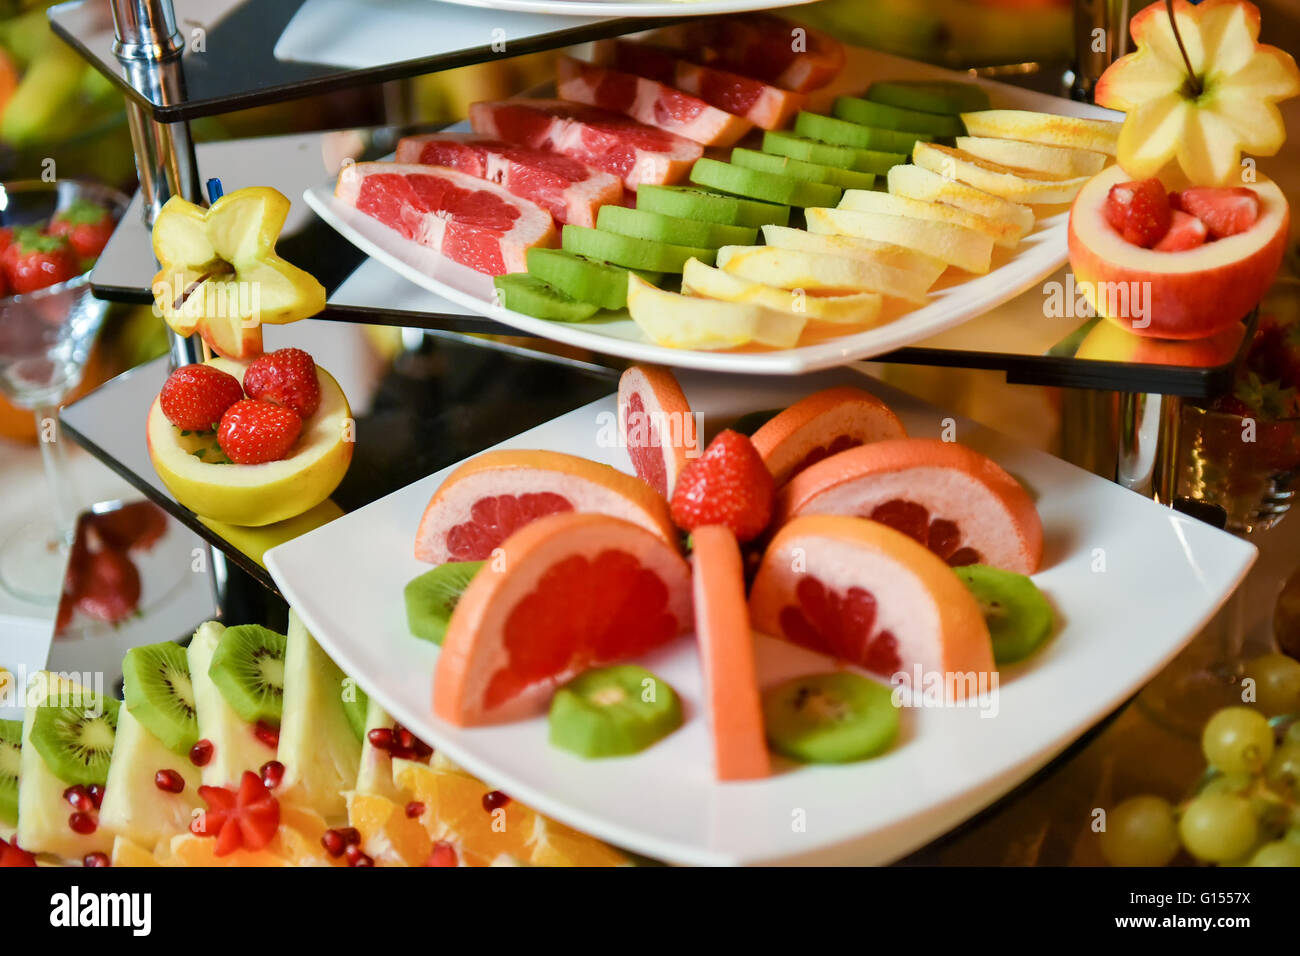 Plaques avec différents types de fruits : fraise, ananas, orange, kiwi Banque D'Images